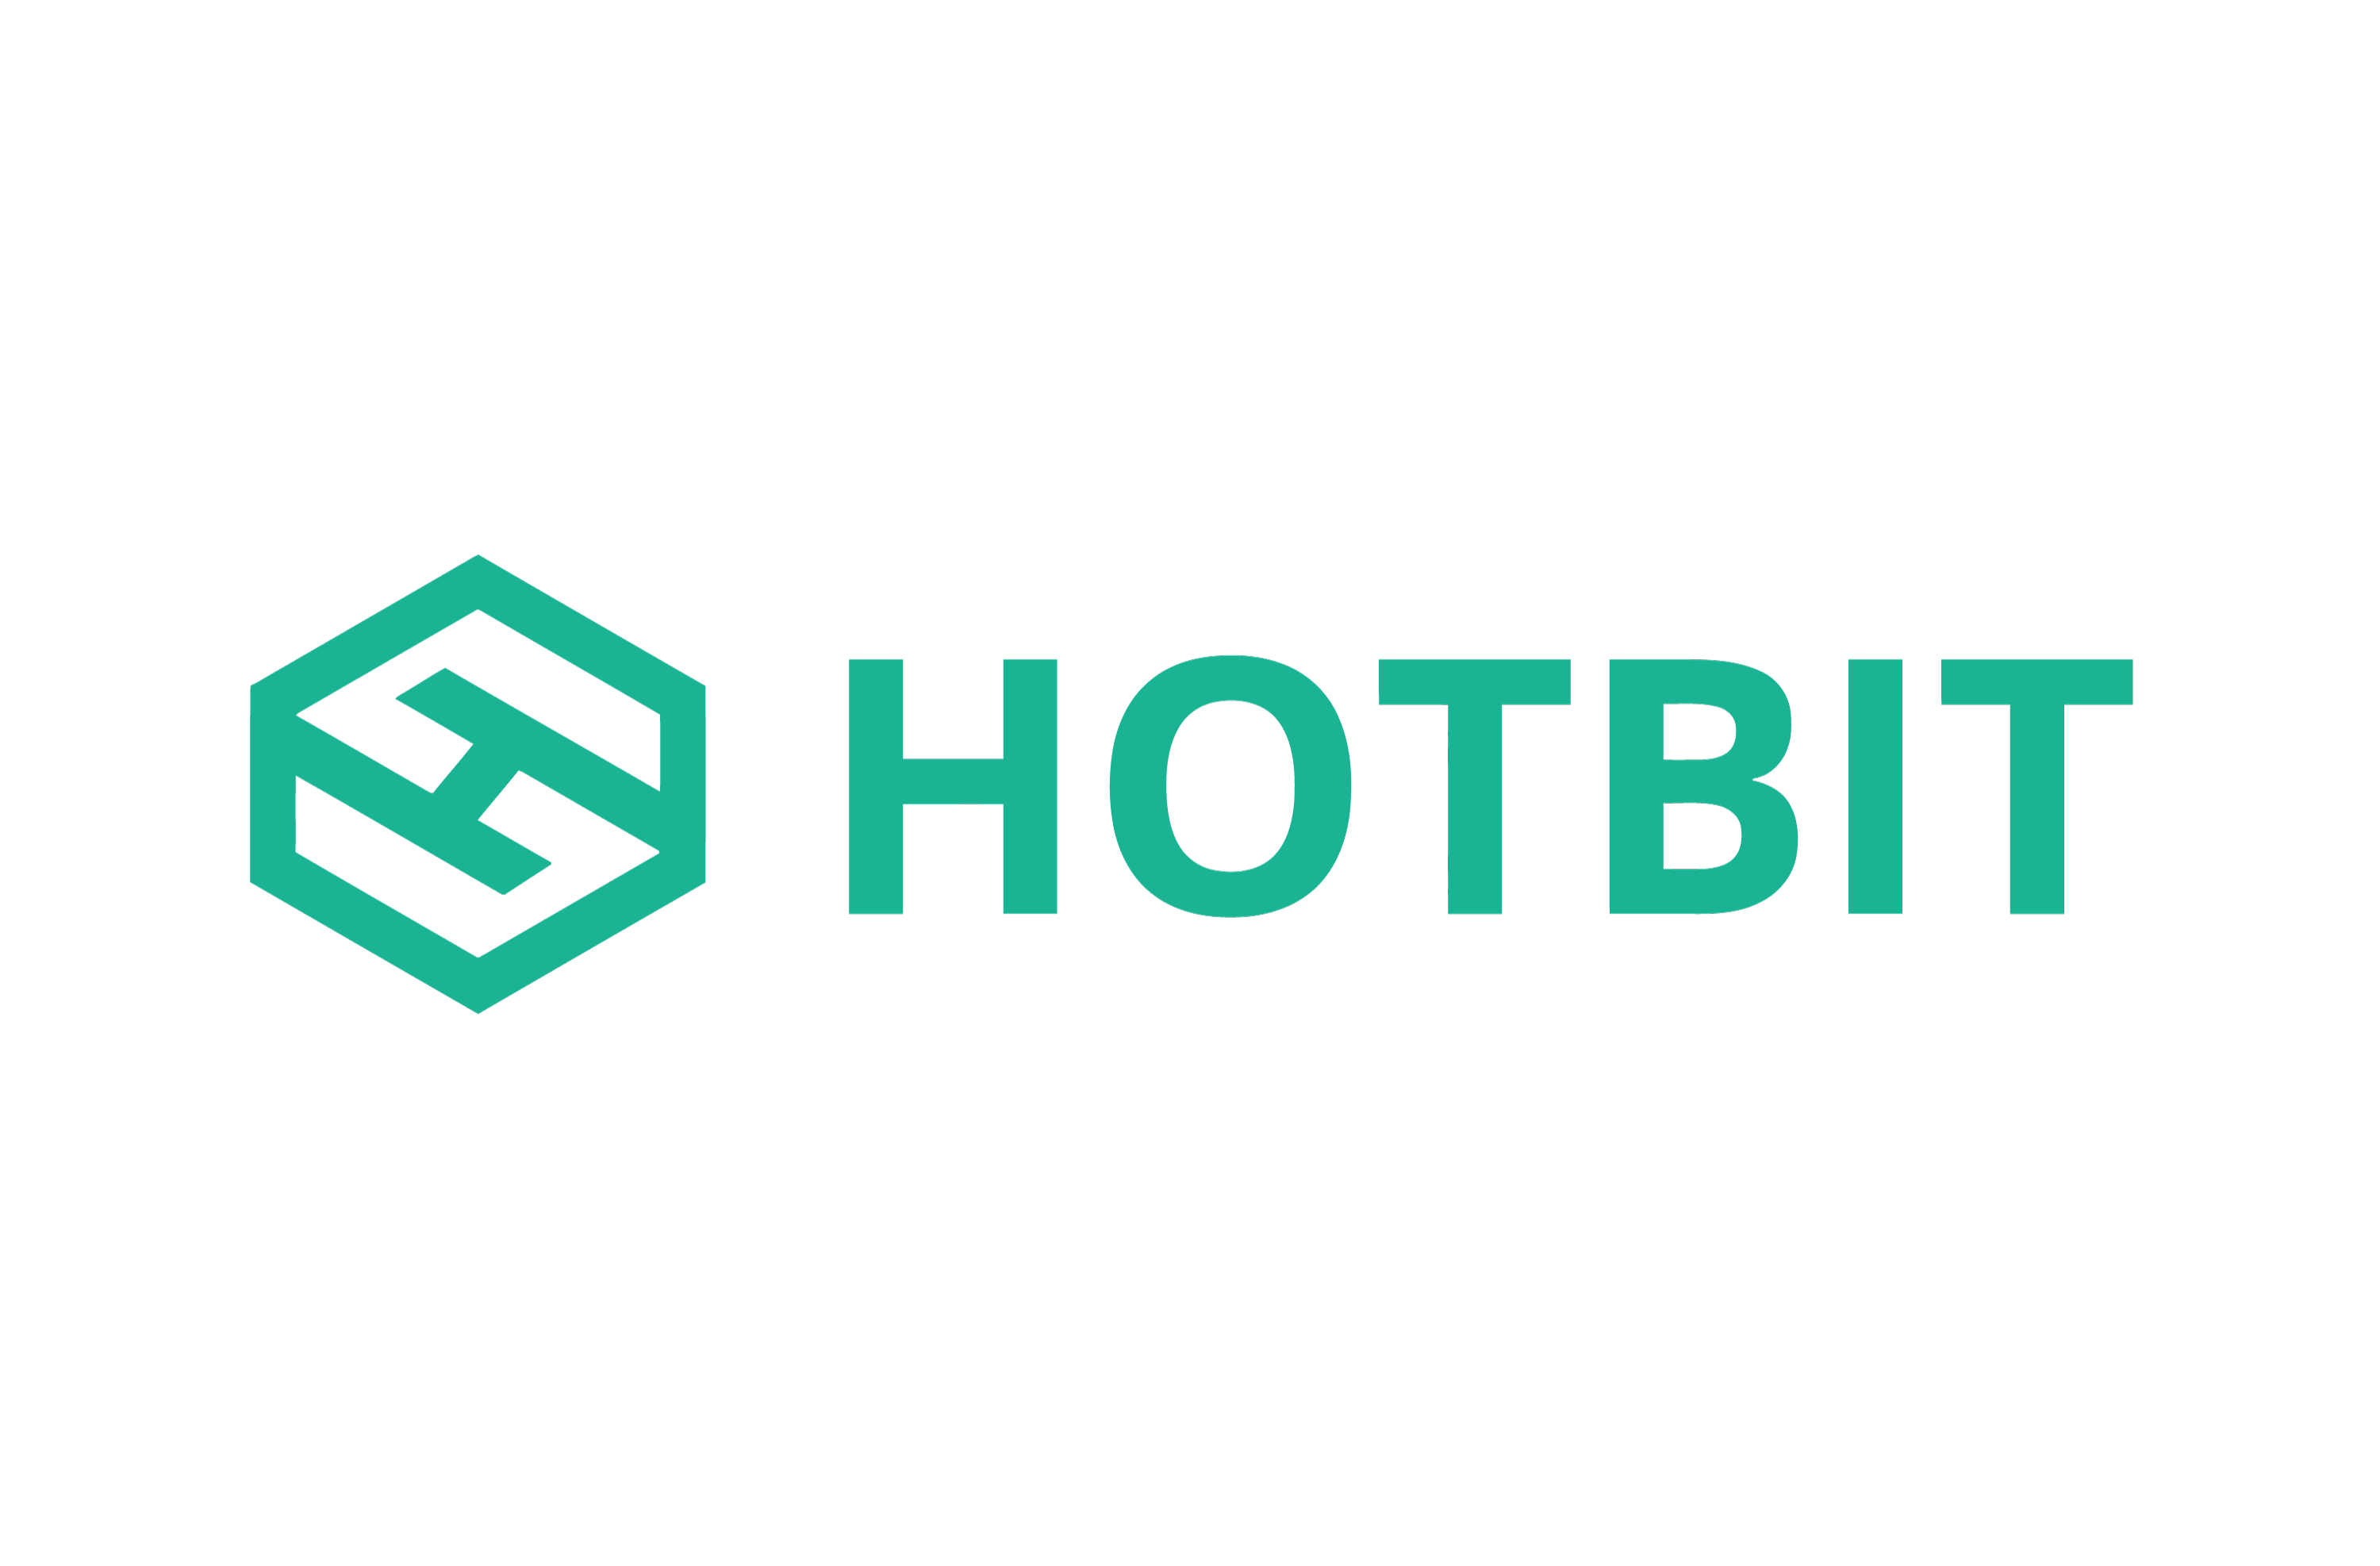 Hotbit